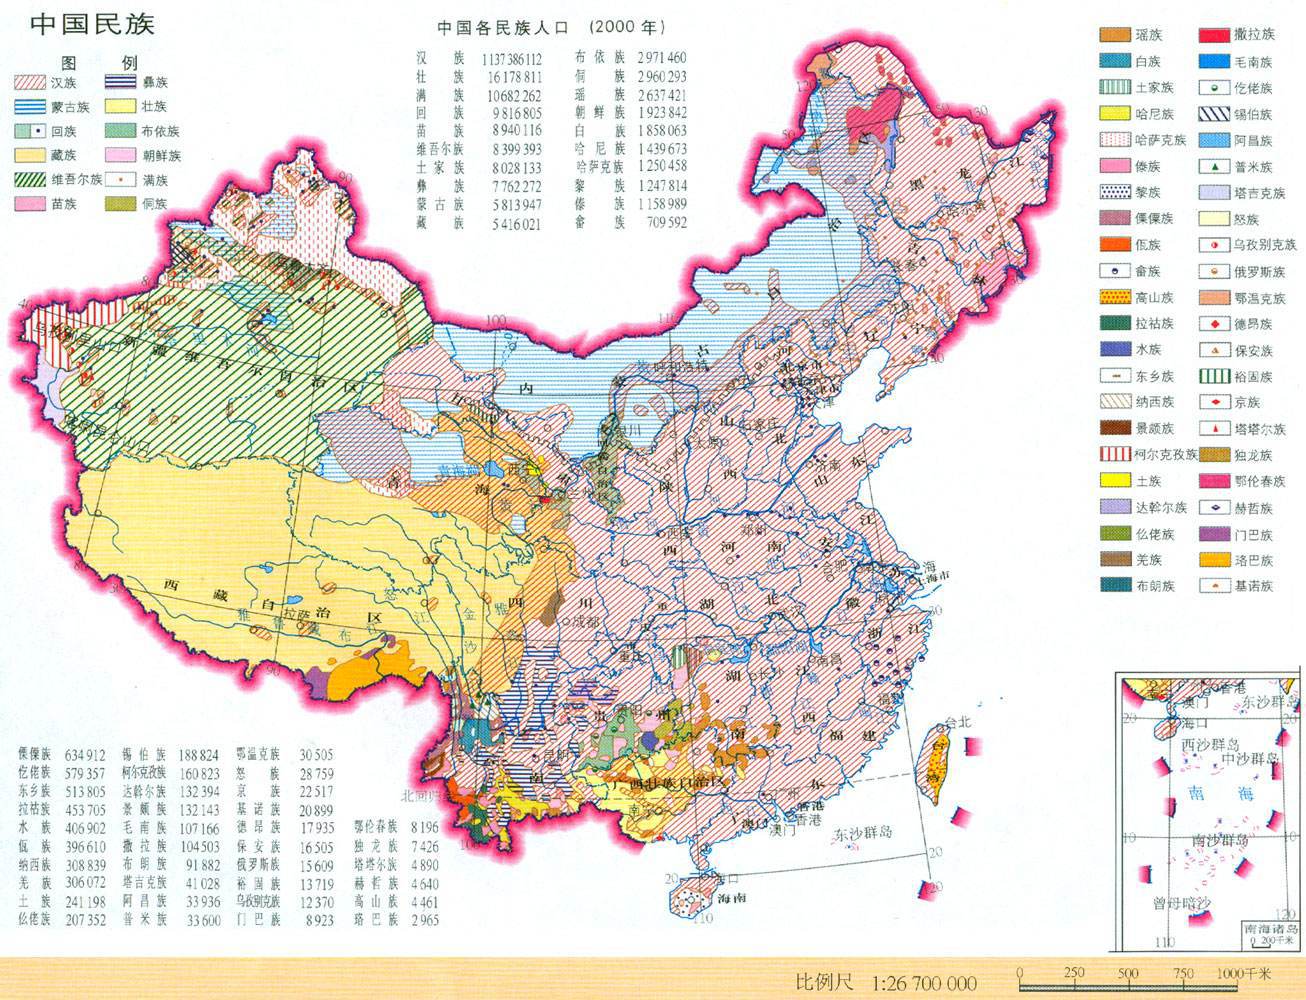 专家预测到2100年,中国人口仅有6亿,是什么导致人不愿